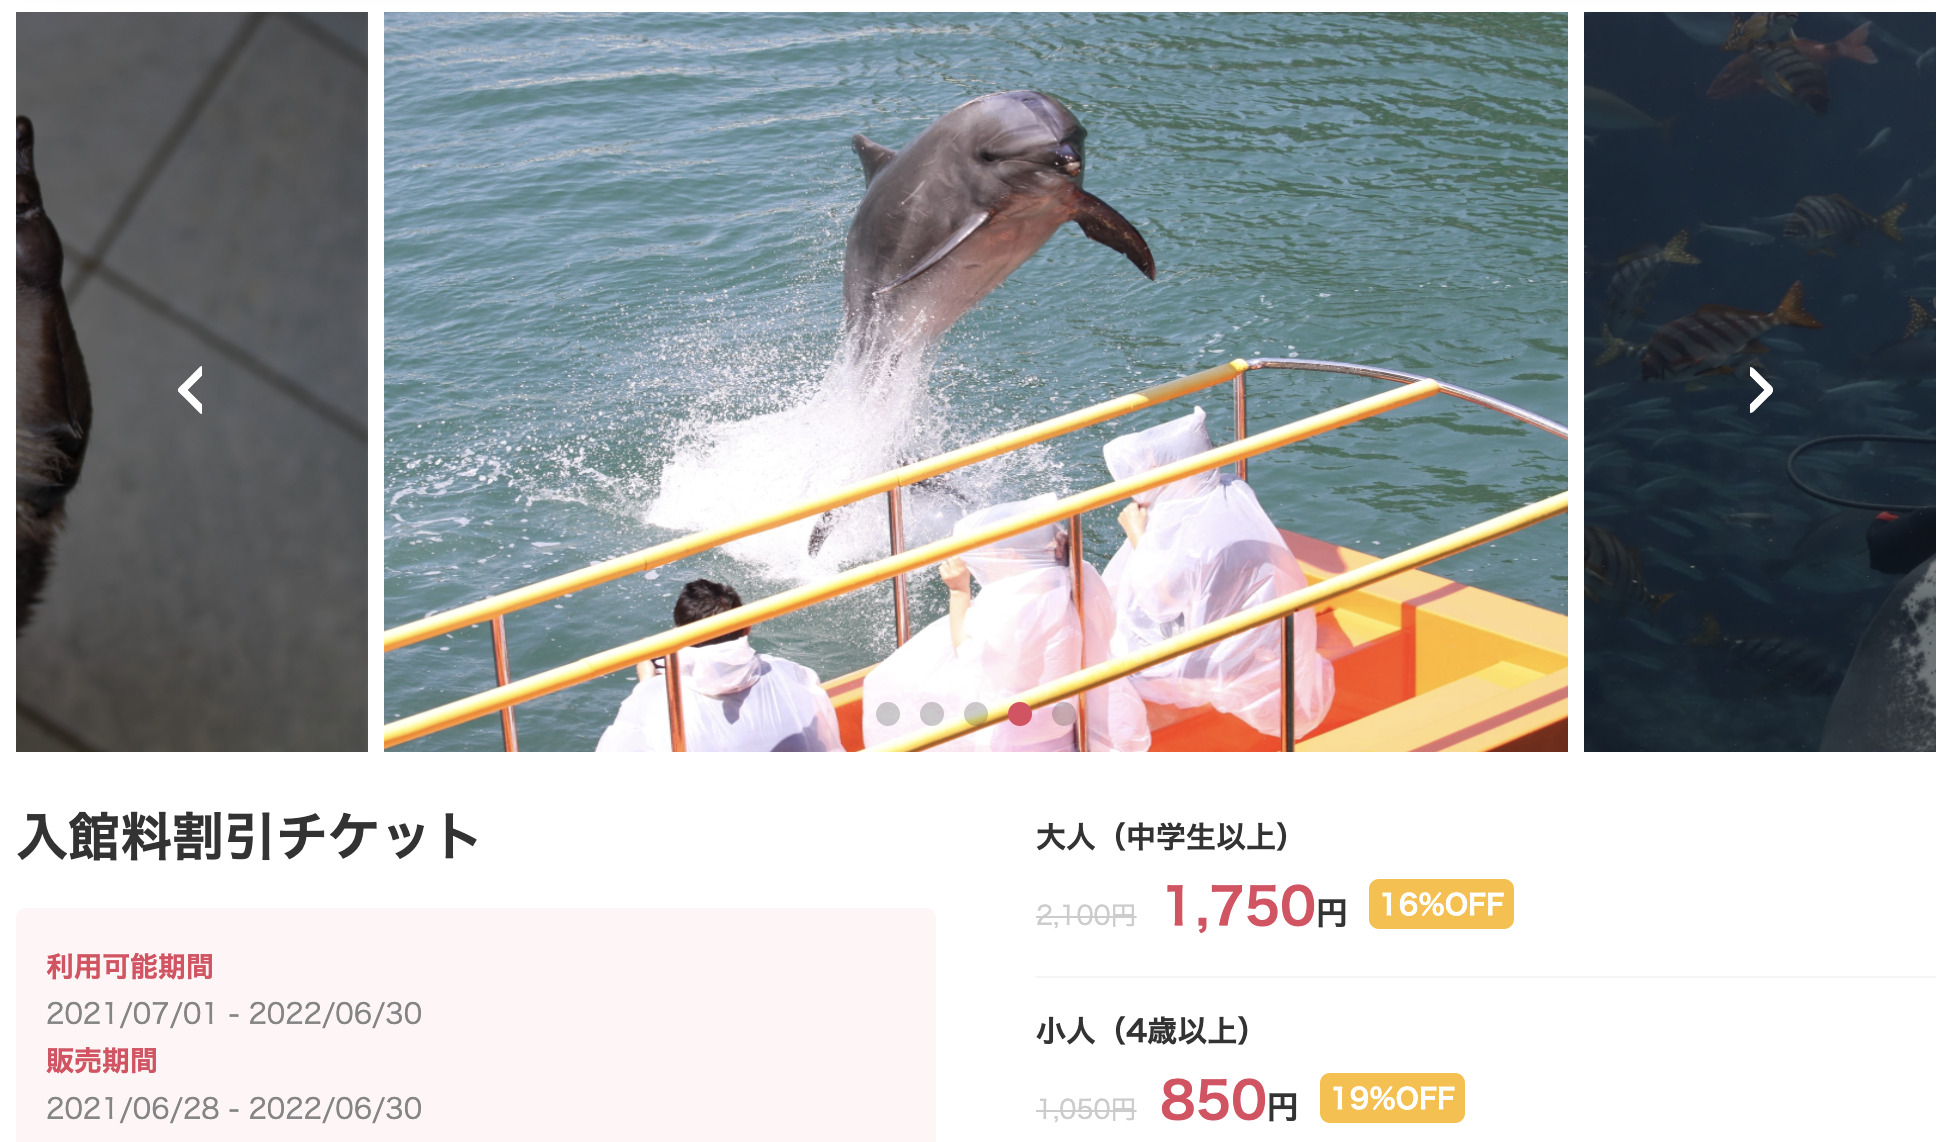 下田海中水族館の割引クーポン券